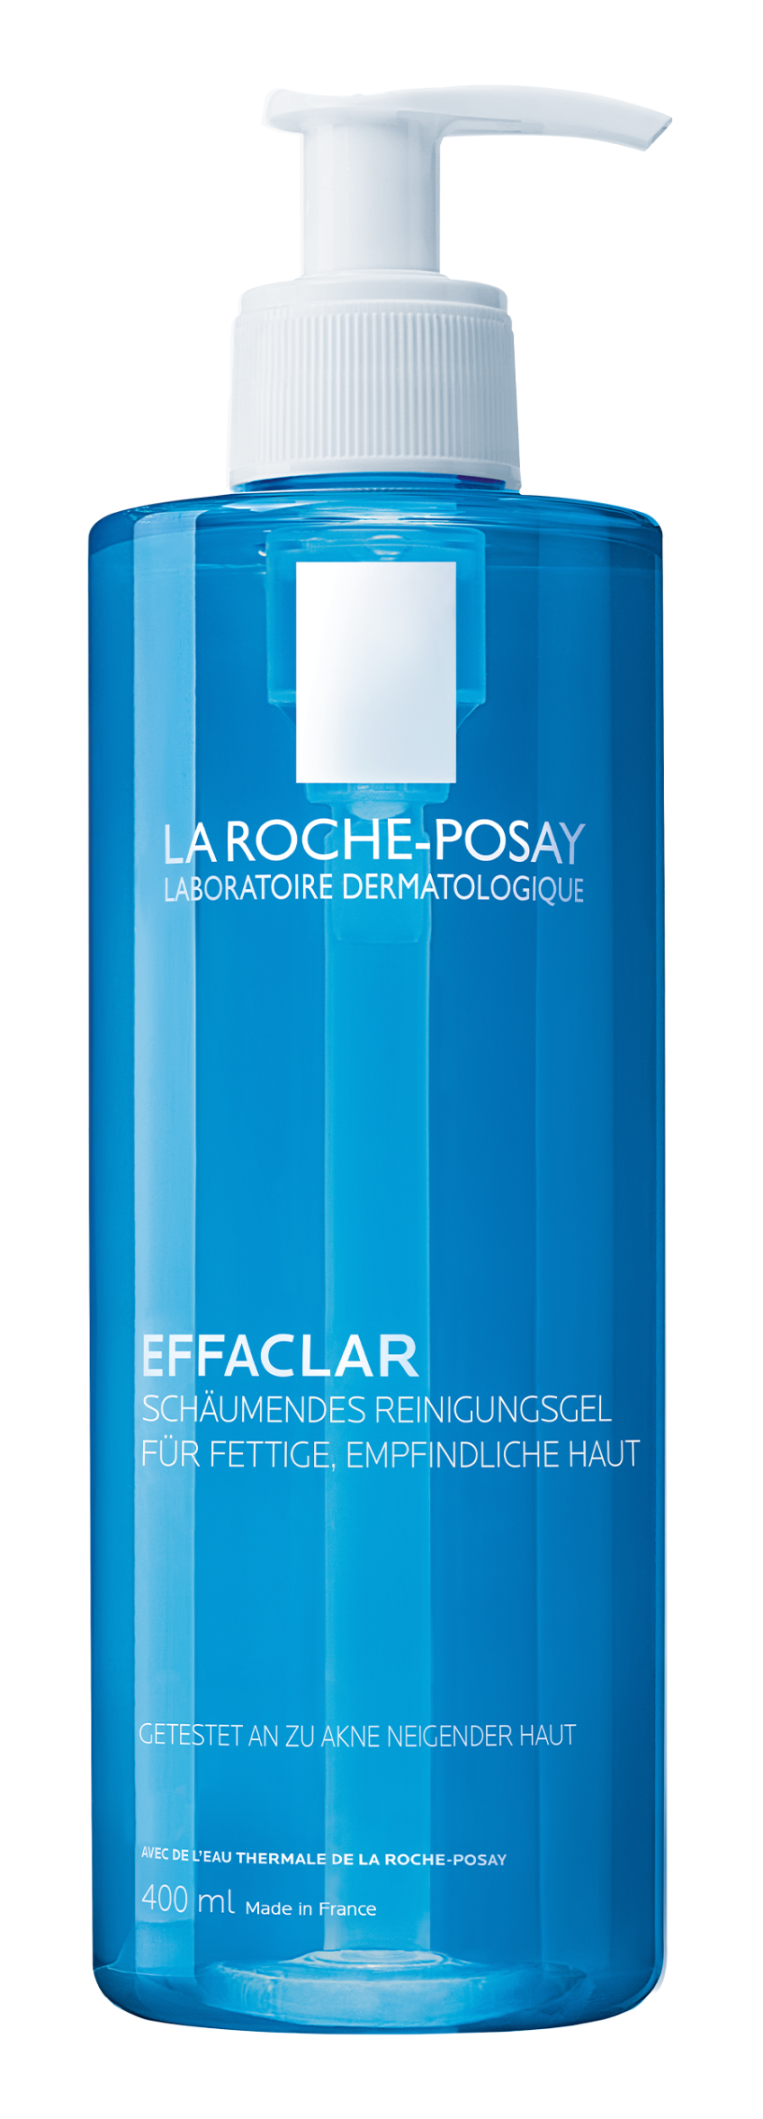 Image of La Roche-Posay EFFACLAR Reinigungsgel 400ML